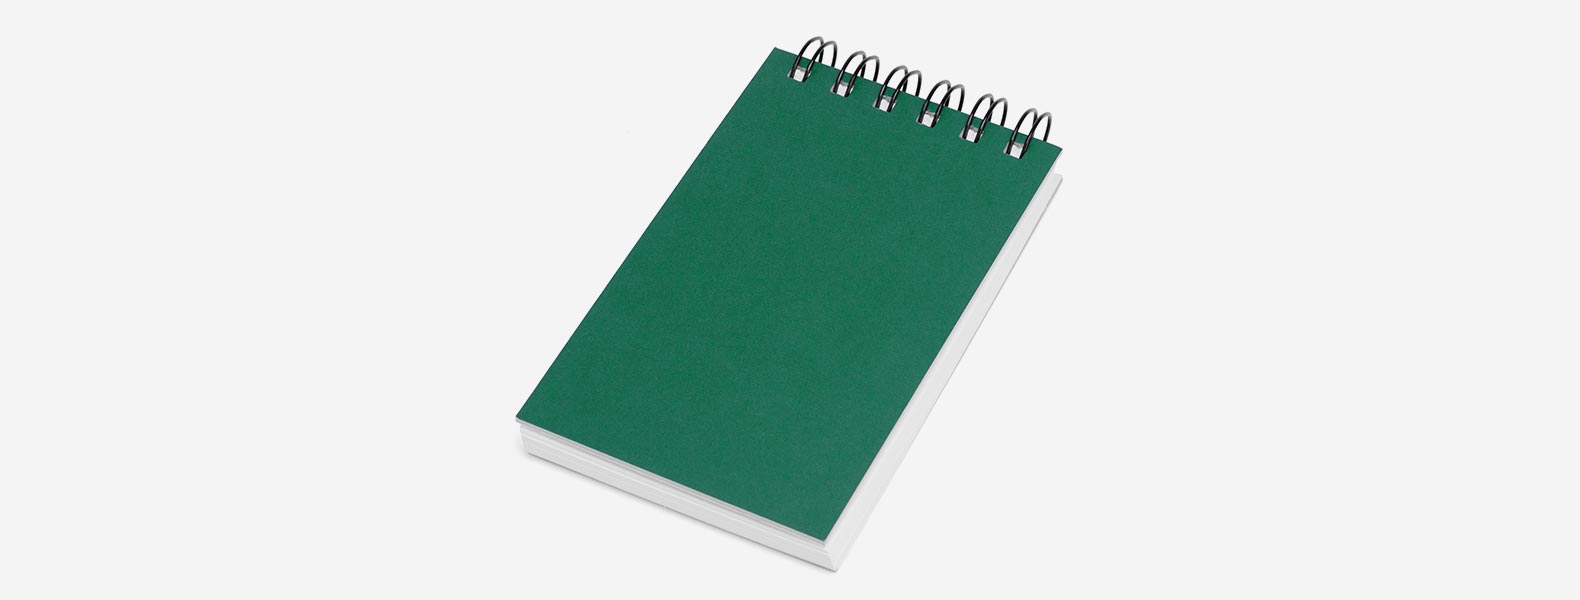 Caderno para anotações verde com capa dura. Conta com 100 folhas pautadas com fechamento wire-o e 5 cores com 25 folhas autocolantes.